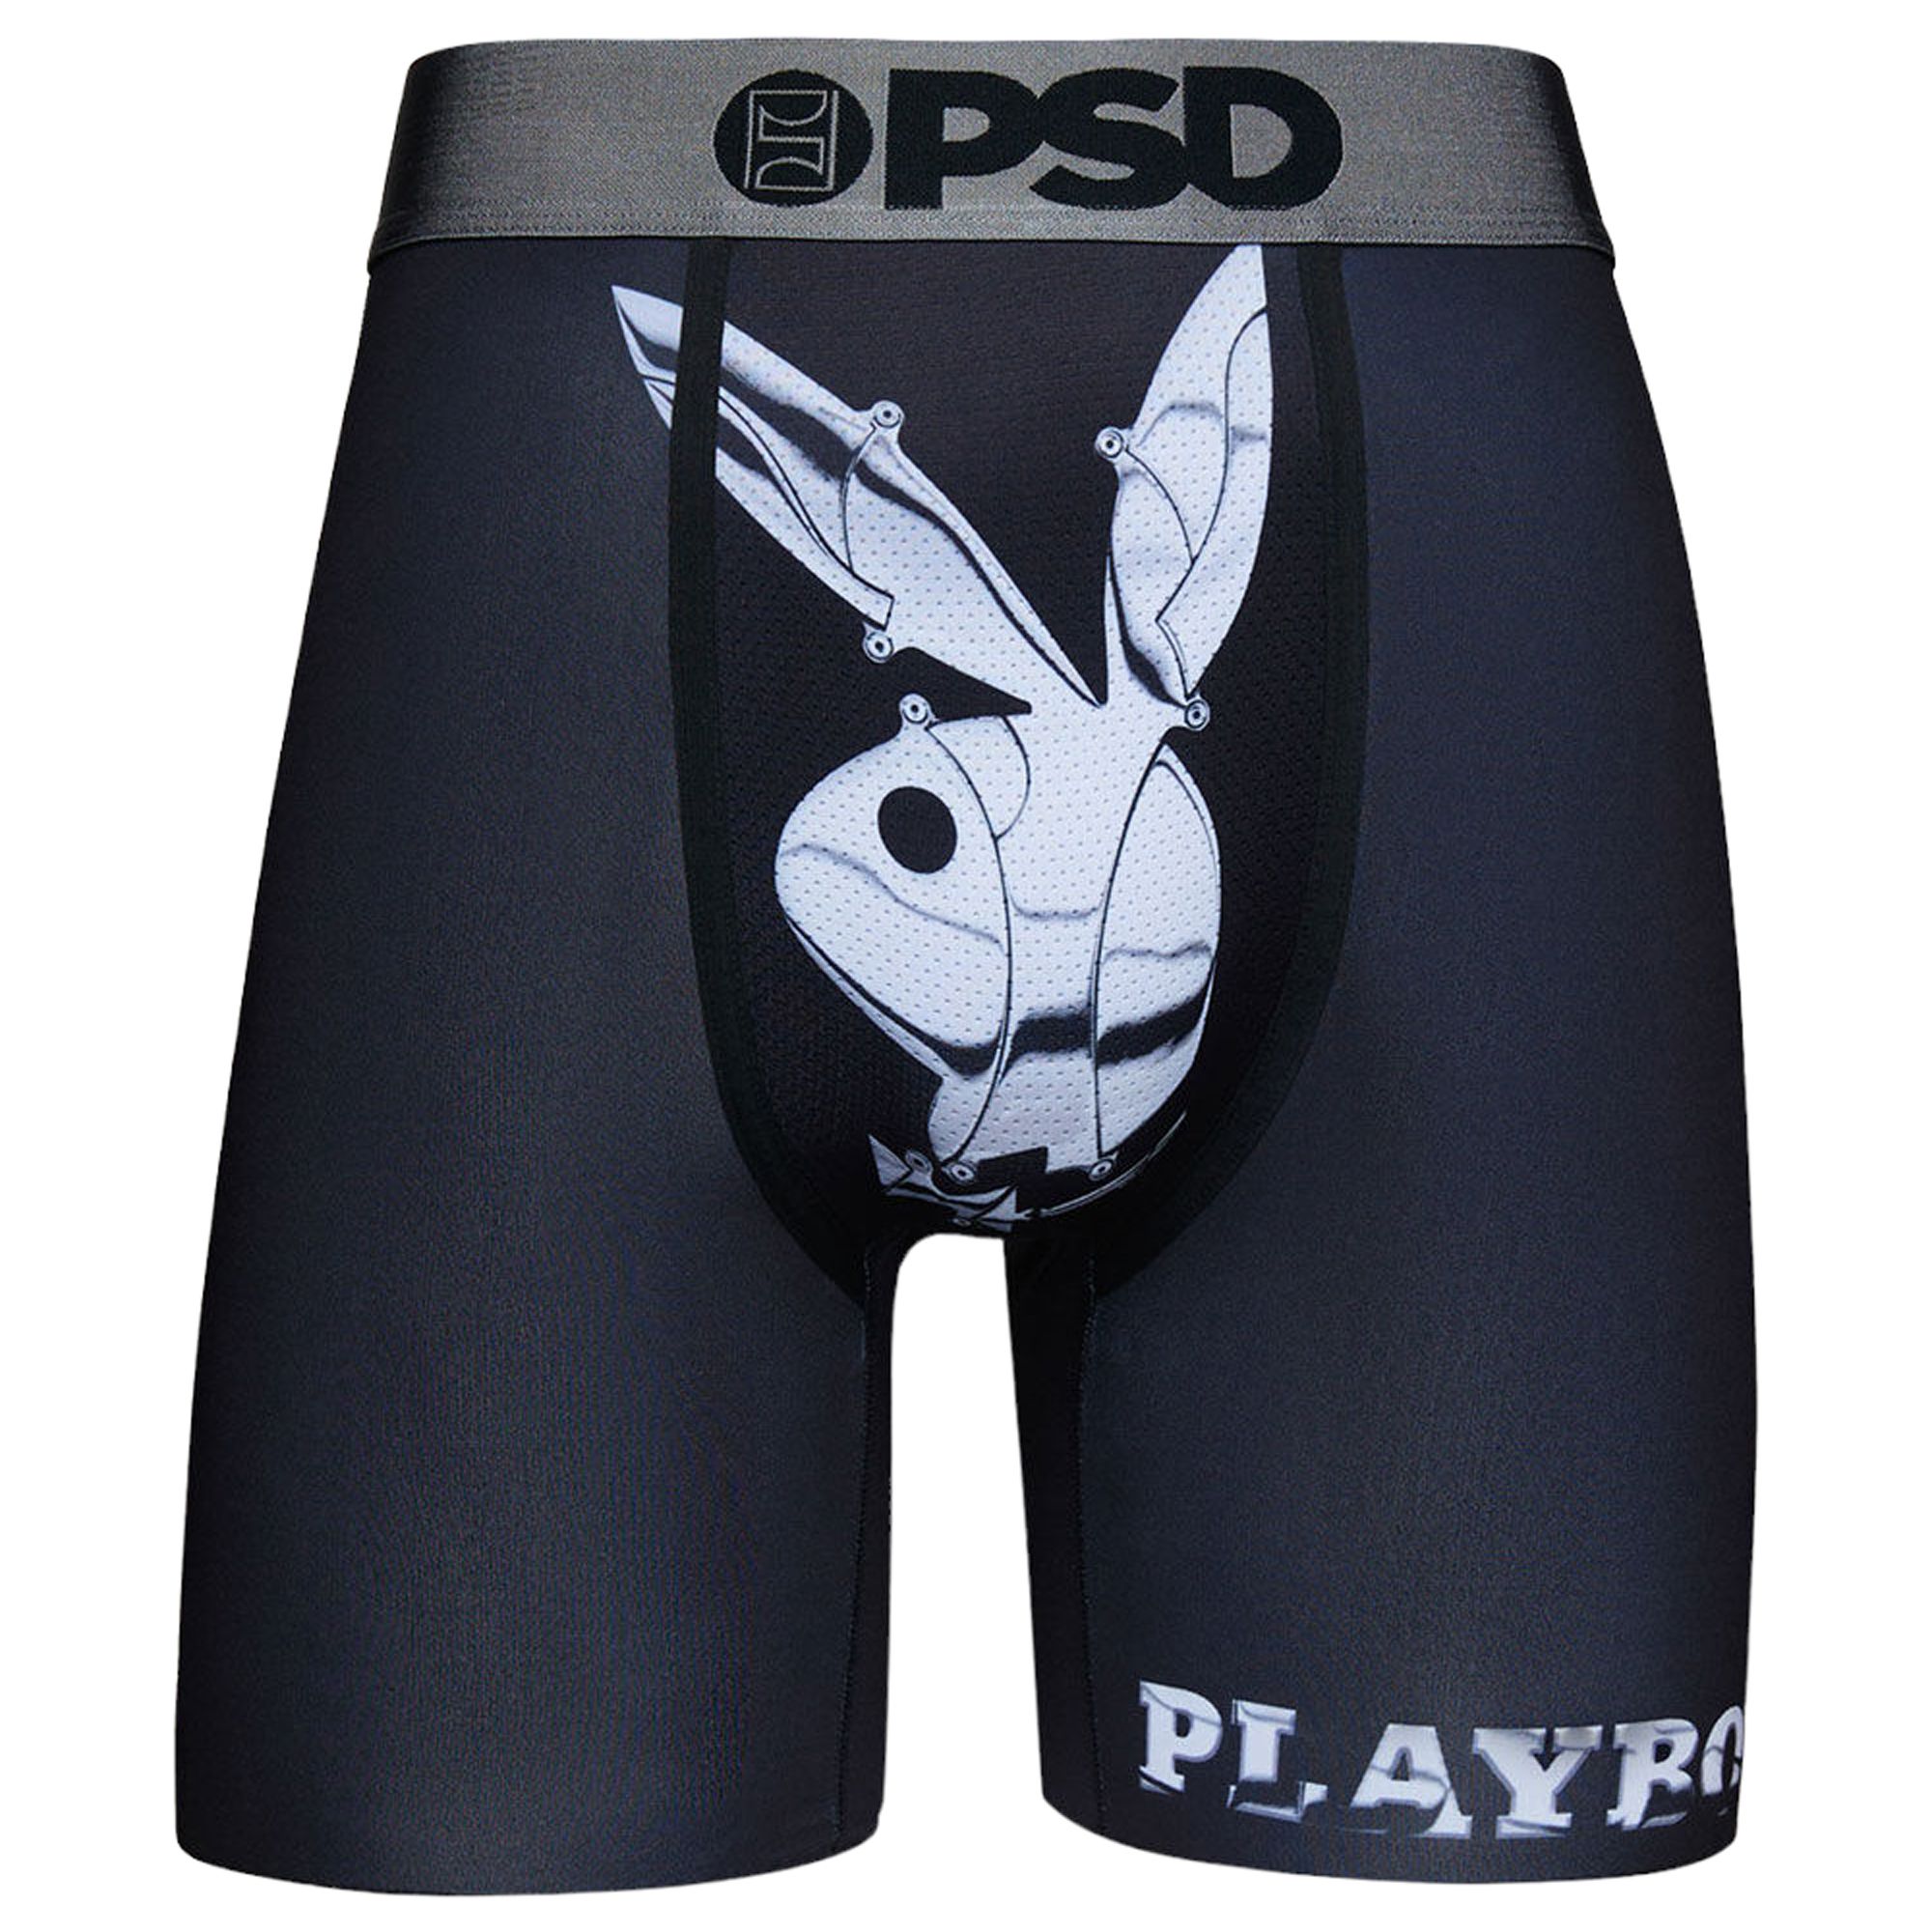 PLAYBOY - SKATER Boxer Brief - PSD Underwear